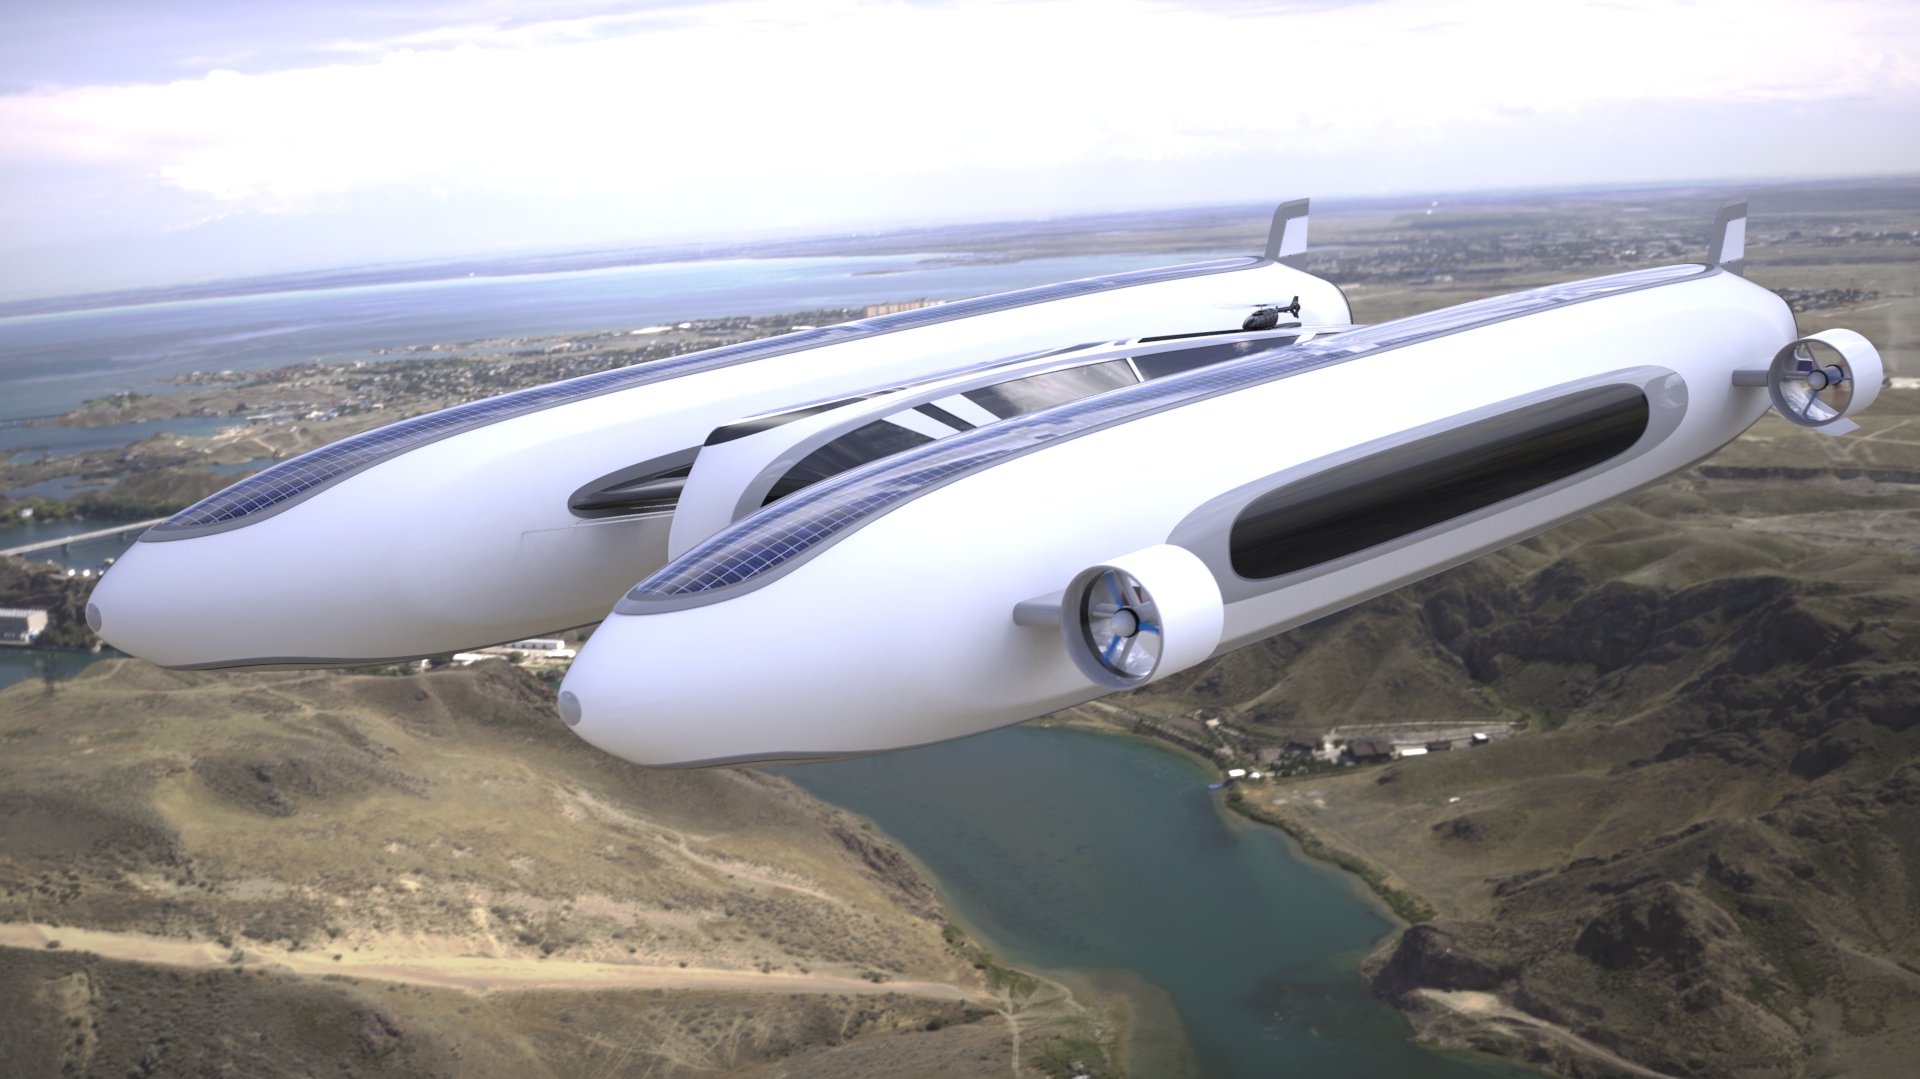 Il concept 'Sky Yacht' elaborato dallo studio Lazzarini Design per una mobilità aerea e acquatica sostenibile